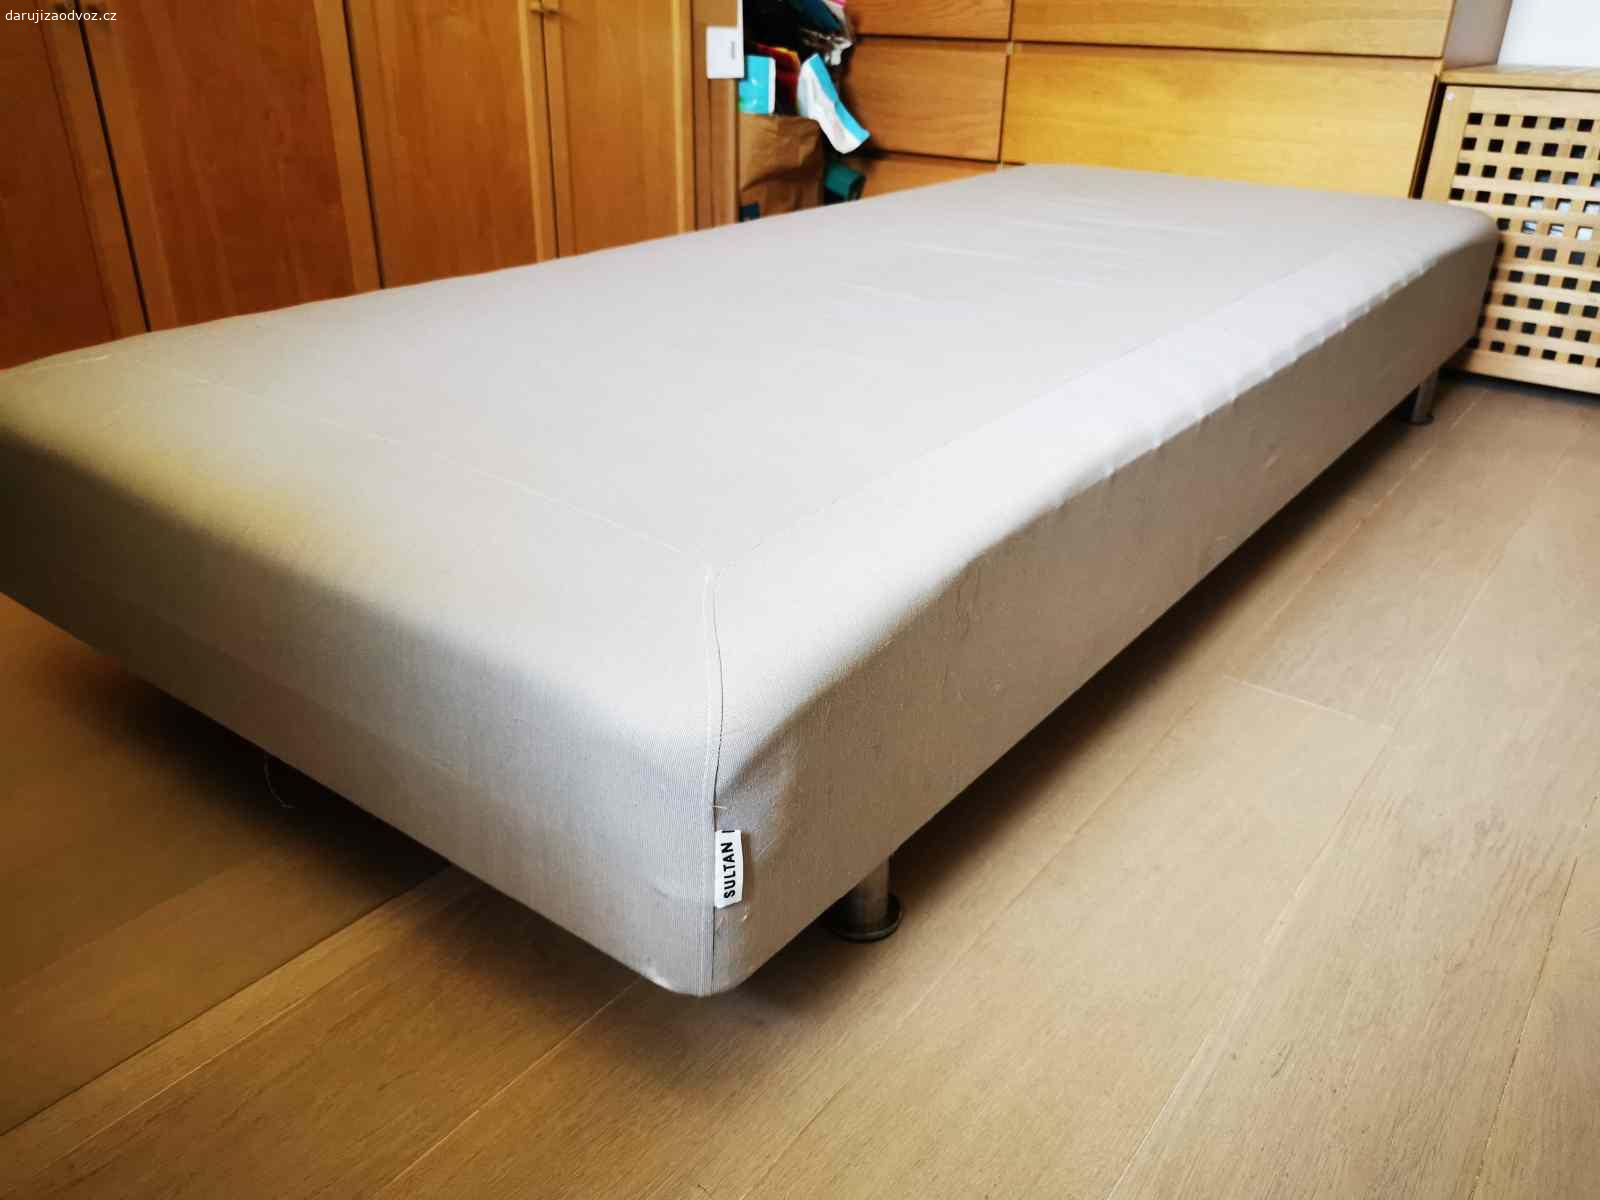 Daruji postel. 200x90 cm
Postel / rám pod matraci
Pevná, bytelná